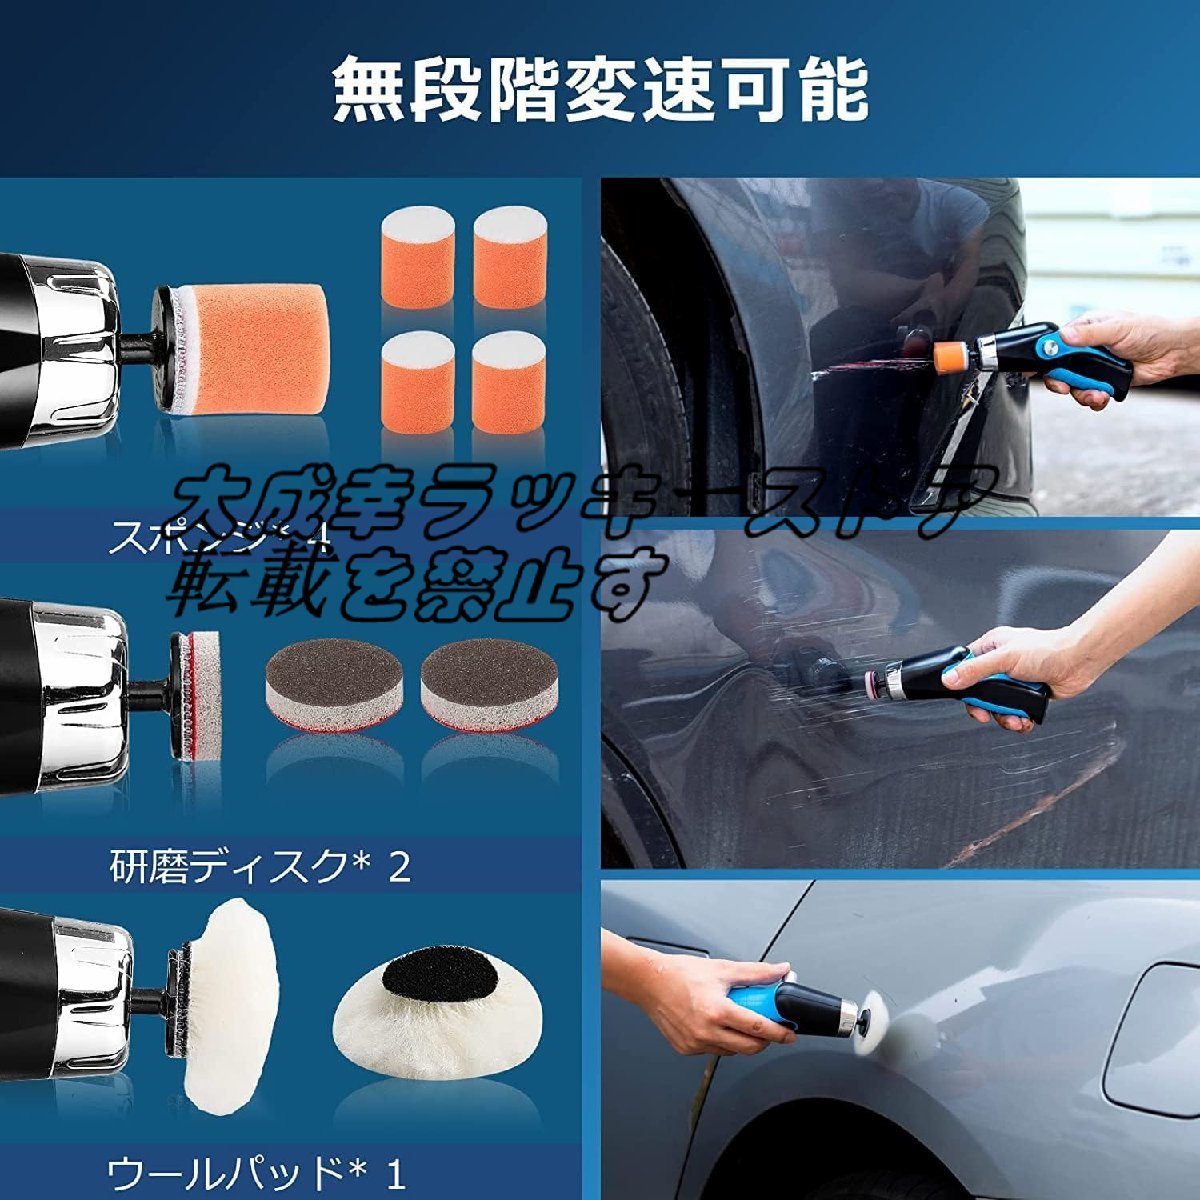 小型ポリッシャー ミニポリッシャー 電動ポリッシャー コードレス USB充電式 コンパクト軽量 研磨器 洗車 家具のキズ修復 自動車用z1860の画像4